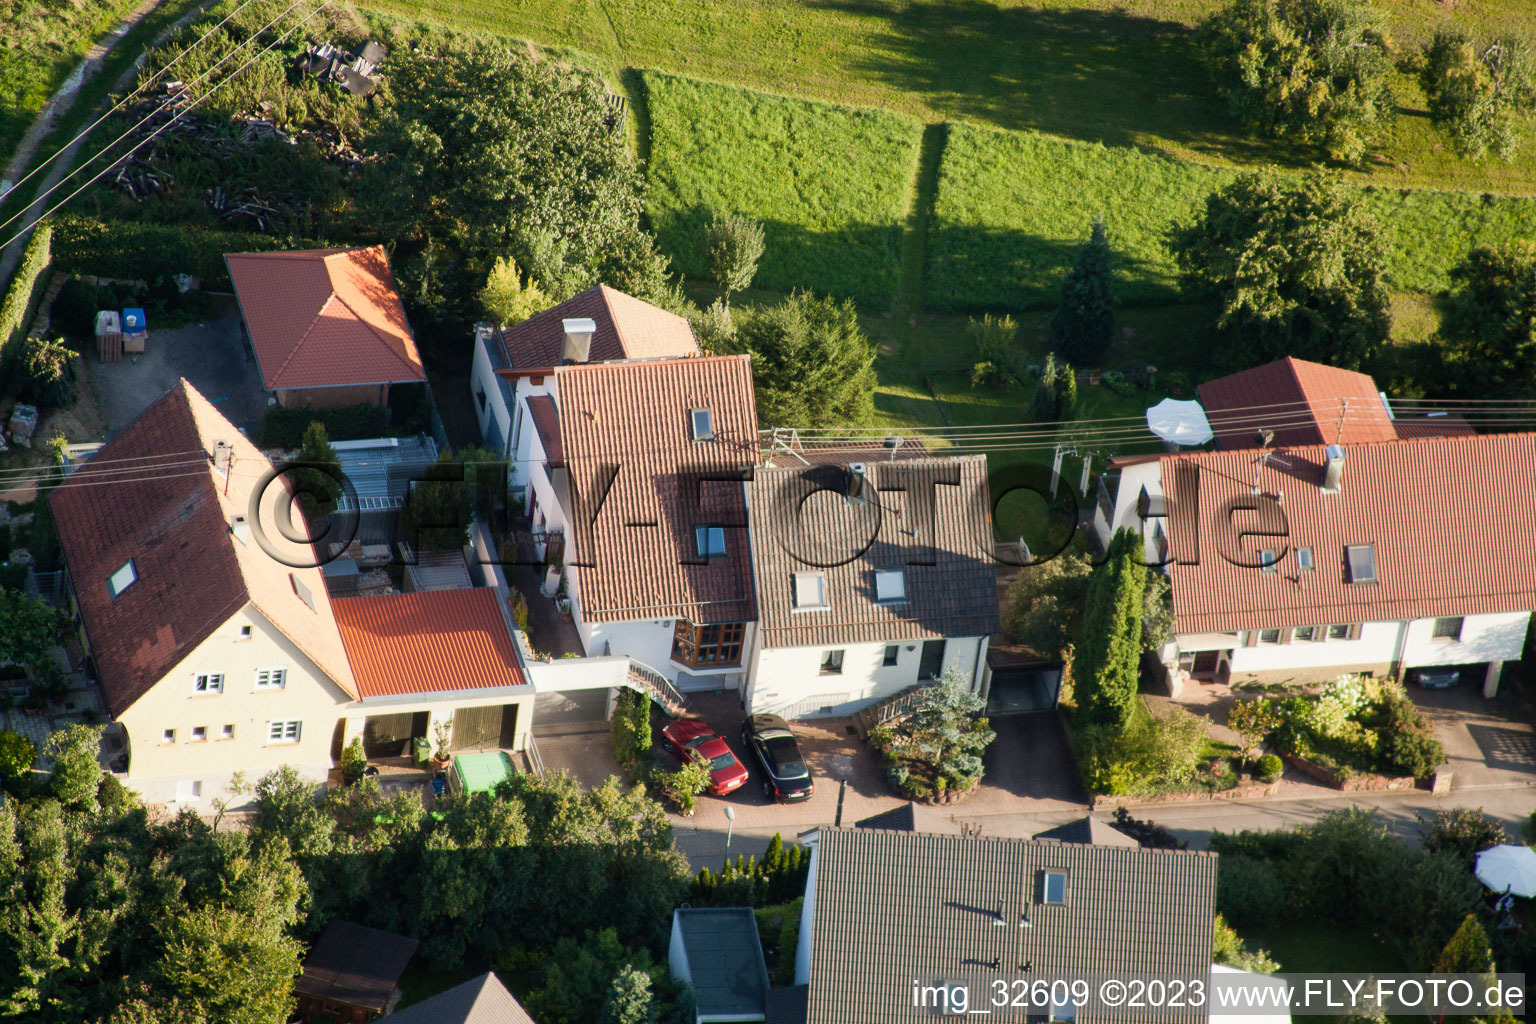 Gräfenhausen im Bundesland Baden-Württemberg, Deutschland aus der Luft betrachtet